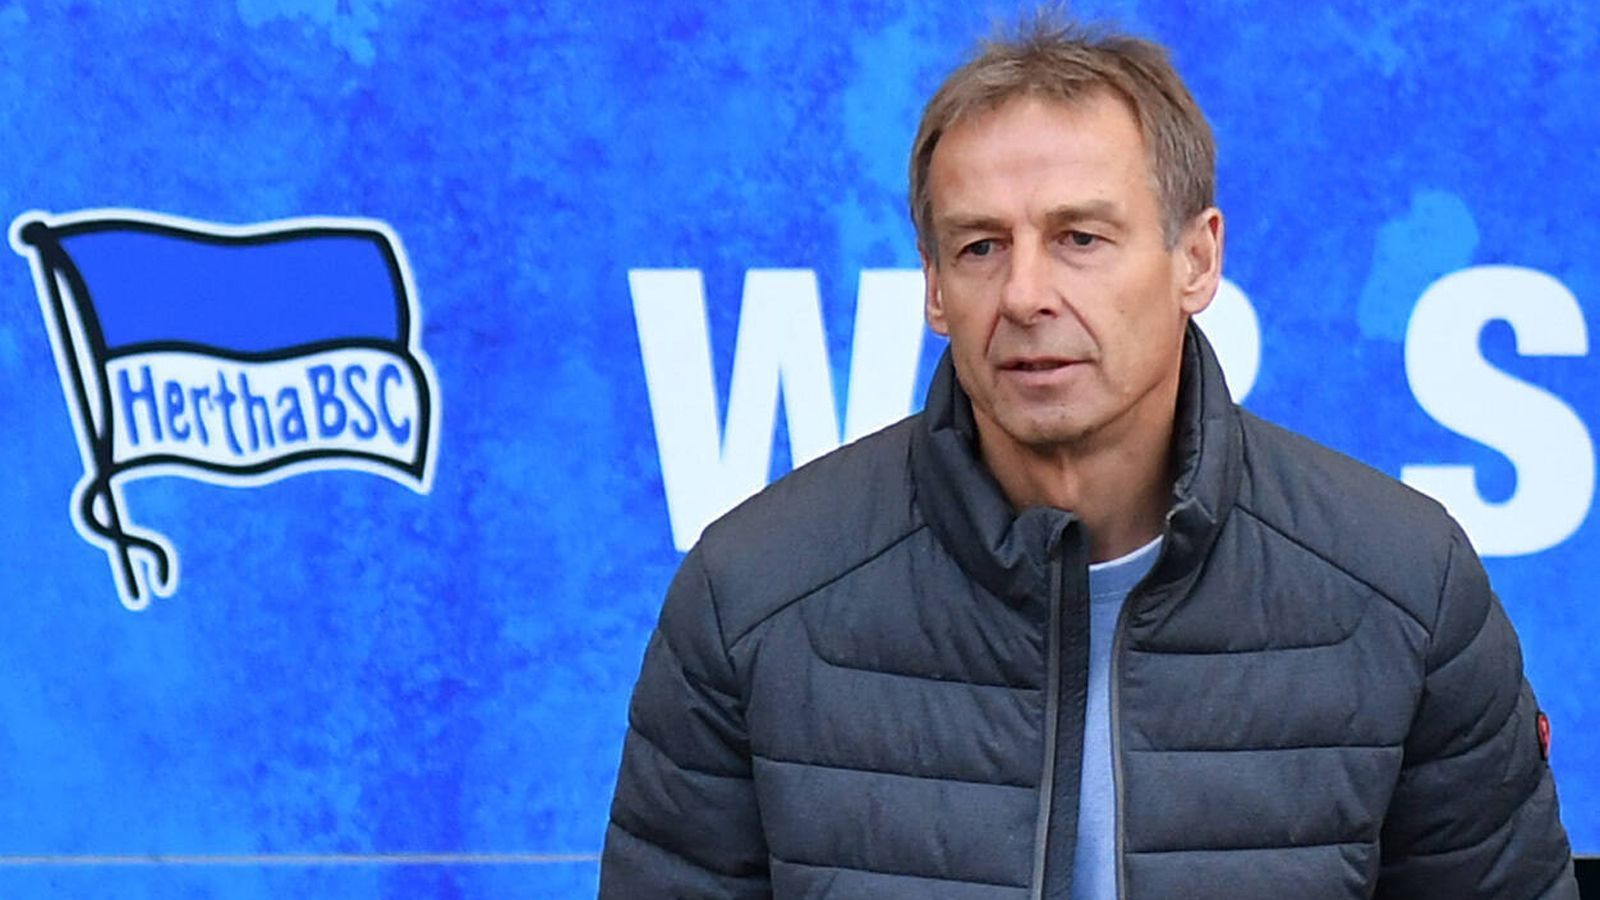 
                <strong>Verlierer: Jürgen Klinsmann</strong><br>
                Facebook und die Hertha scheinen irgendwie zu passen. Denn auch Jürgen Klinsmanns Amtszeit bei den Berlinern verbindet man unweigerlich mit einem Facebook-Livestream. Aber der Reihe nach: Nach dem Einstieg von Investor Lars Windhorst sollte Klinsmann die Hertha zum bereits genannten "Big City Club" machen. Doch die Zusammenarbeit wurde zum Debakel. Sportlich lief es nur durchschnittlich, auf Facebook gab Klinsmann nach nur elf Wochen seinen Rücktritt bekannt. Für Manager Michael Preetz kam dies aus dem Nichts. Es folgten verbale Scharmützel – Klinsmann versuchte vergeblich, während eines Facebook-Livestreams zu retten, was nicht mehr zu retten war. Schon seine Amtszeit als Trainer beim FC Bayern München scheiterte, nun ist sein Ruf als Trainer wohl endgültig ruiniert.
              